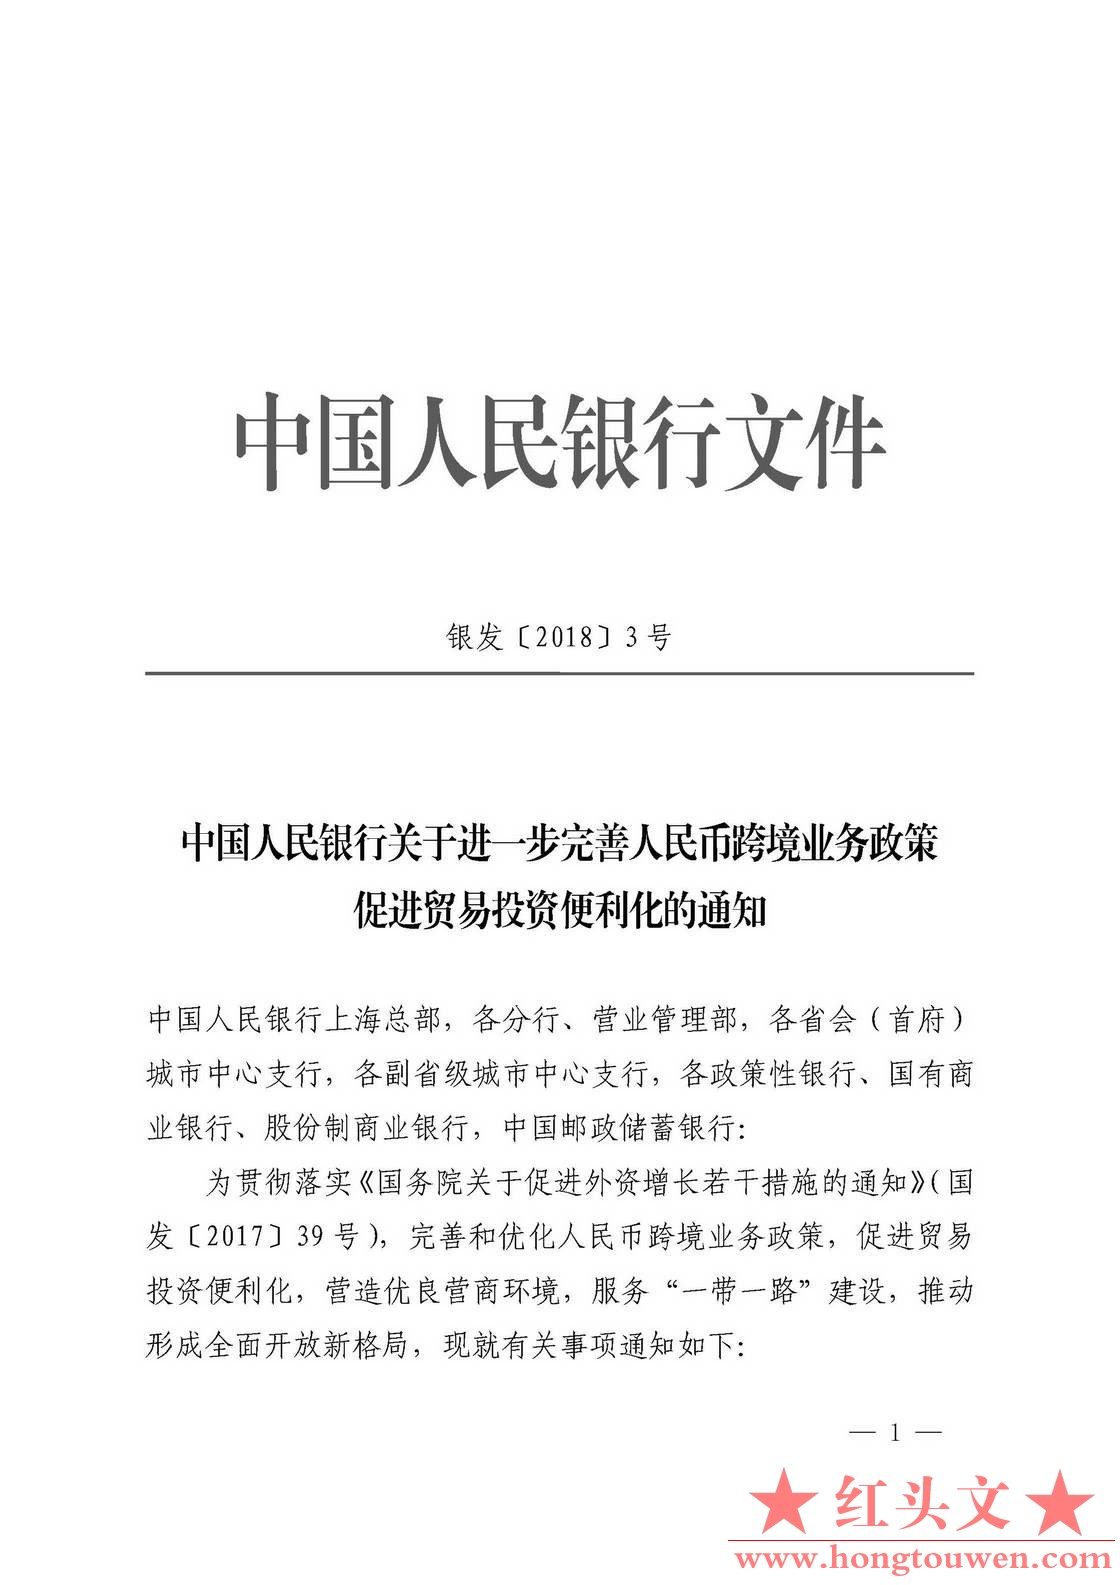 银发[2018]3号-中国人民银行关于进一步完善人民币跨境业务政策 促进贸易投资便利化的.jpg